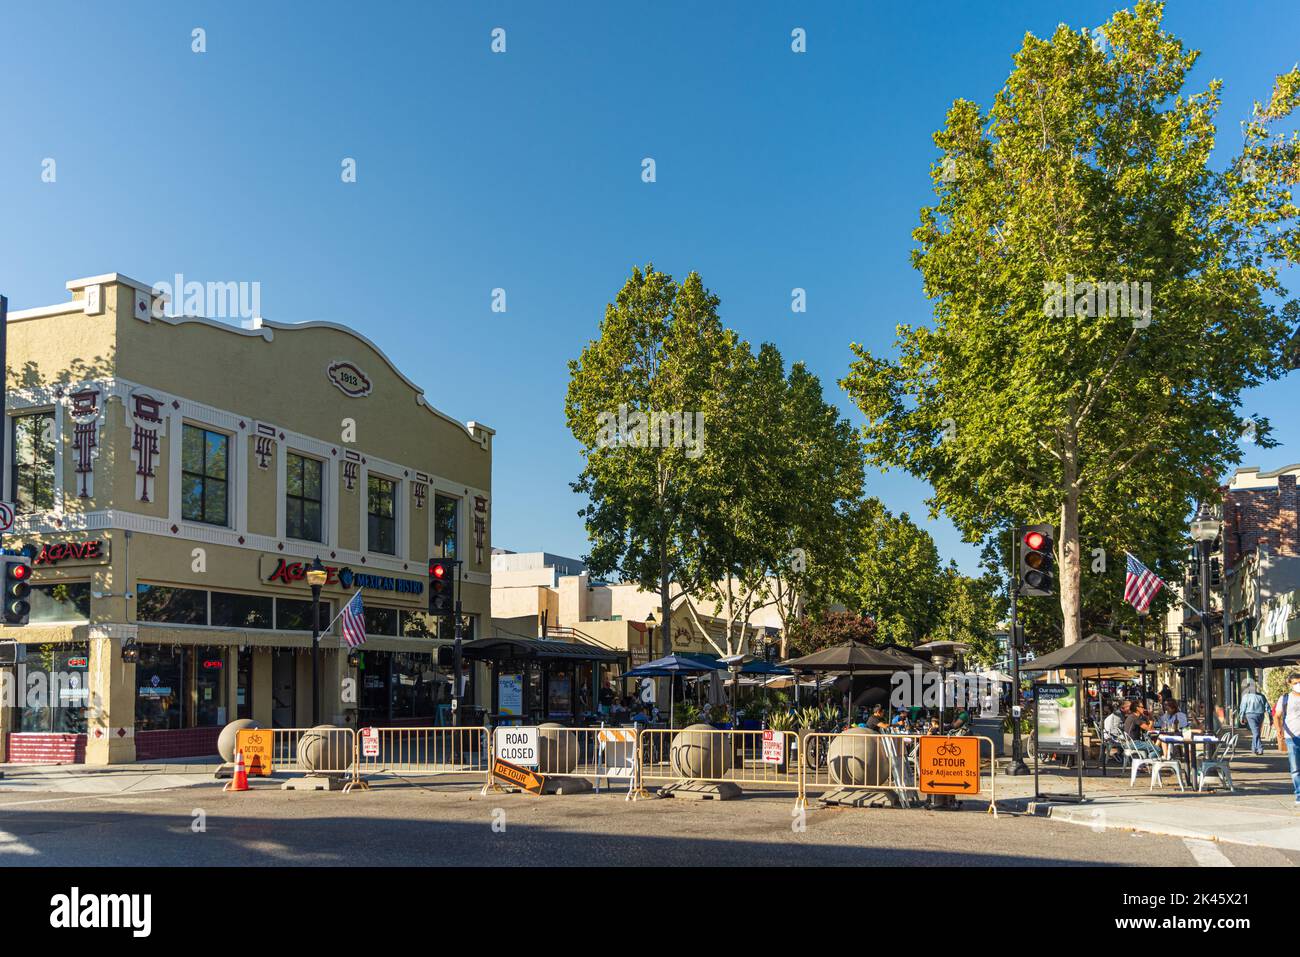 MOUNTAIN VIEW, CA, USA - 29. SEPTEMBER 2022: Downtown Mountain View, California, USA. Die innerstädtische Straße wurde gesperrt, was Platz für Fußgänger macht Stockfoto